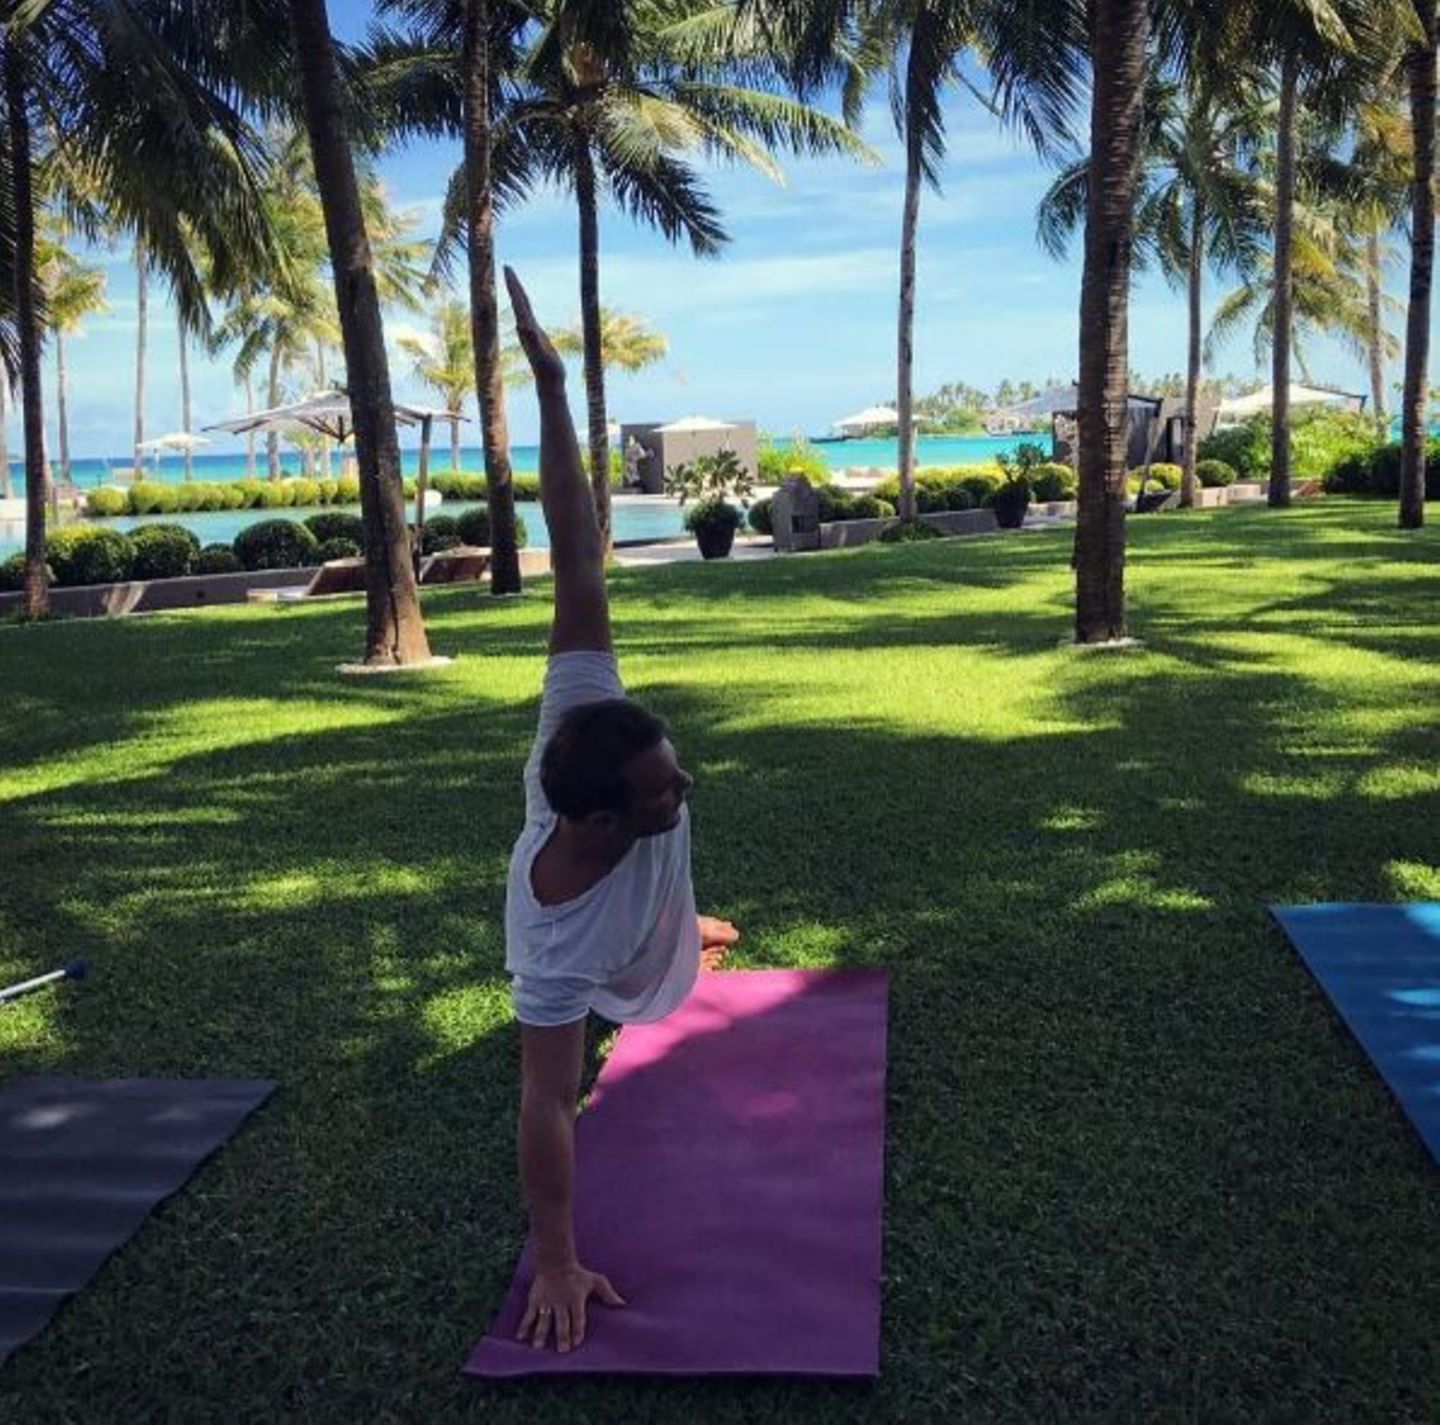 Total entspannt ist Manuel Neuer in seinen Flitterwochen angekommen und genießt bei einer Yoga-Stunde das paradiesische Wetter.